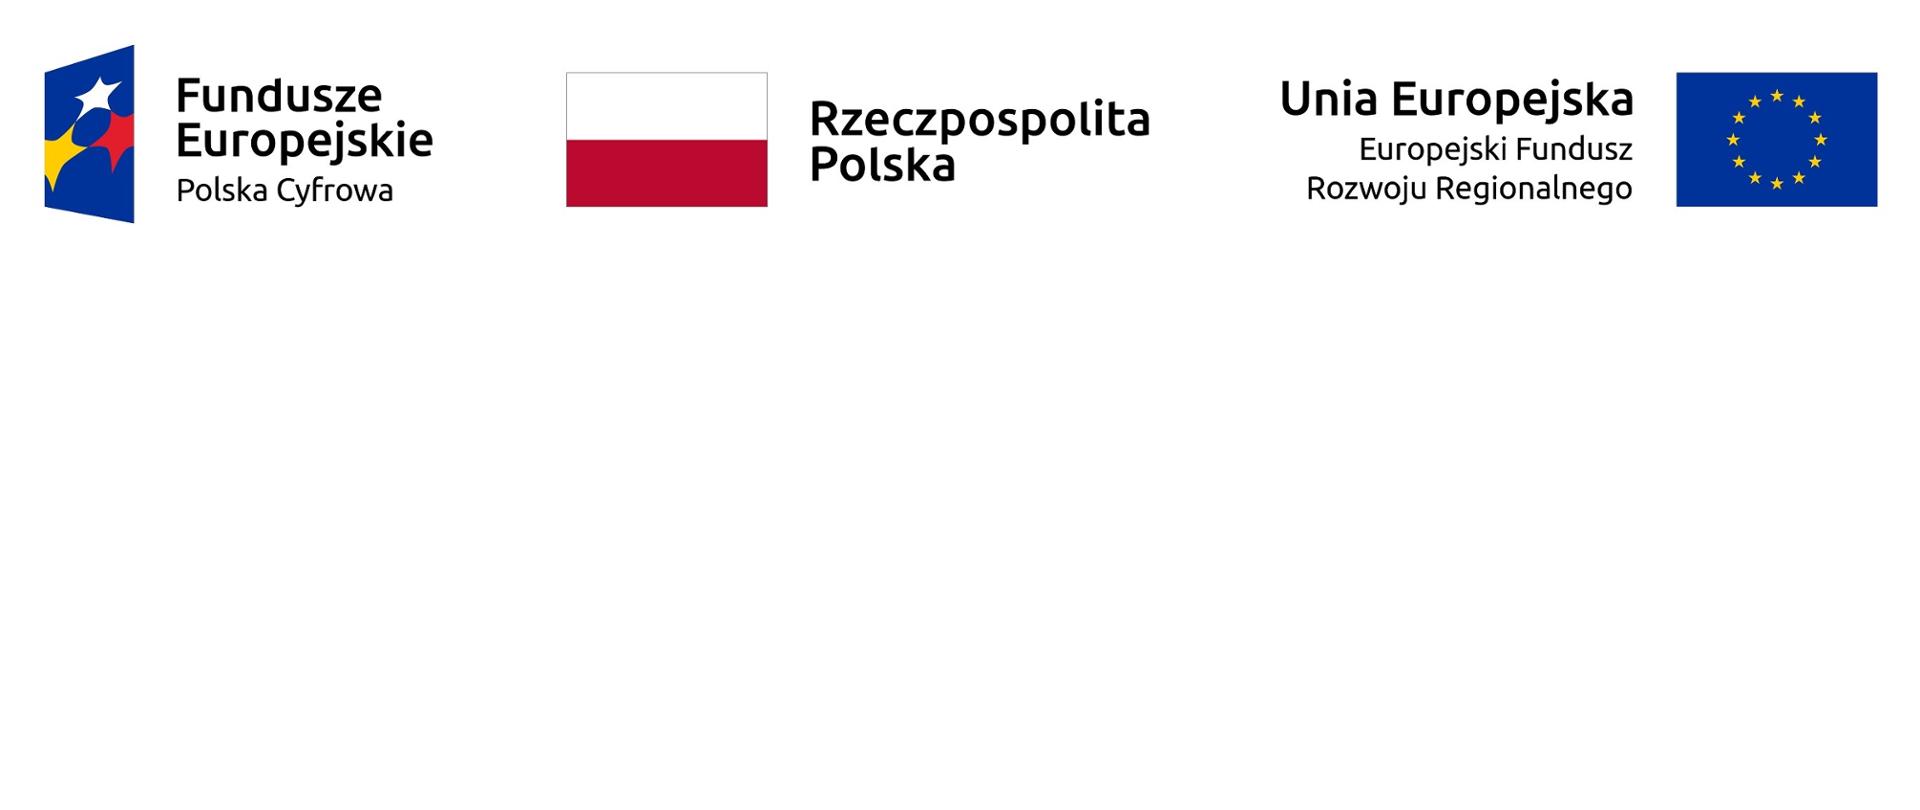 Od lewej do prawej strony loga: Fundusze Europejskie Polska Cyfrowa, Rzeczpospolita Polska, Unia Europejska Europejski Fundusz Rozwoju Regionalnego